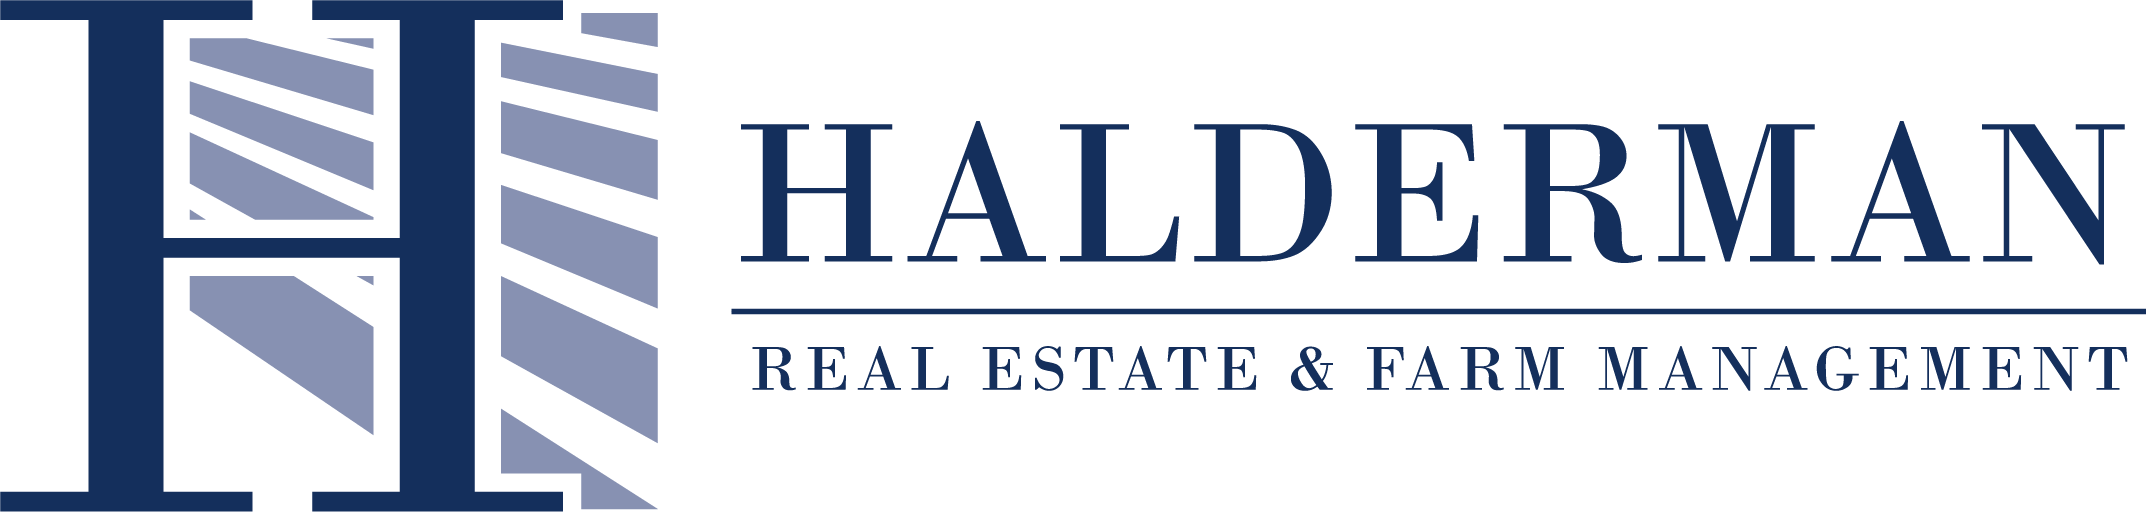 Halderman Real Estate and Farm Management Logo